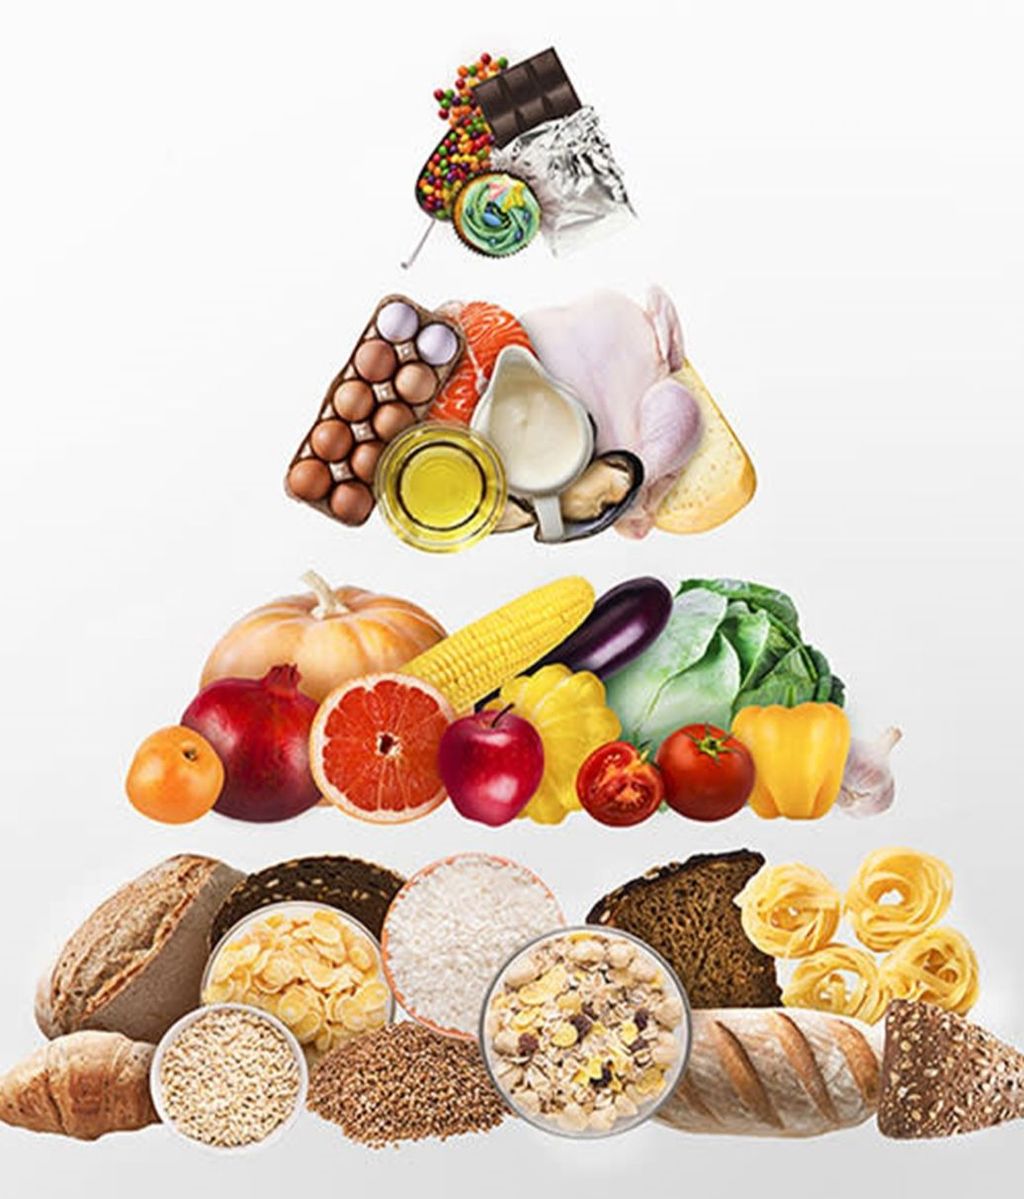 Pirámide alimenticia antiguo patrón nutricional